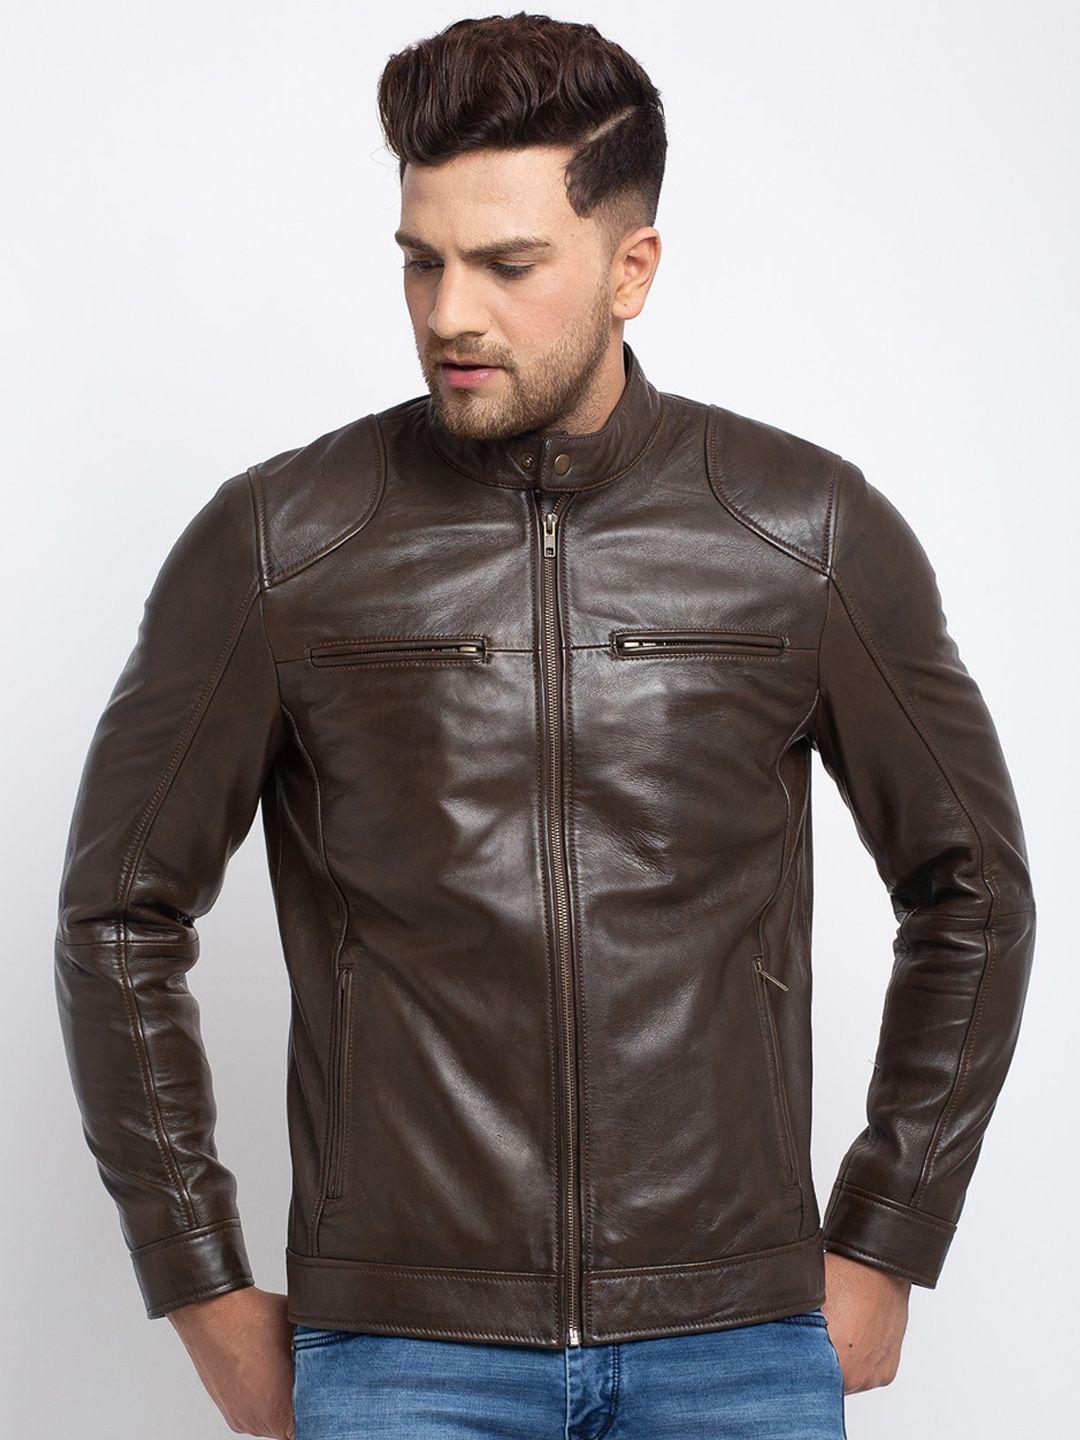 teakwood-leathers-men-brown-leather-leather-jacket